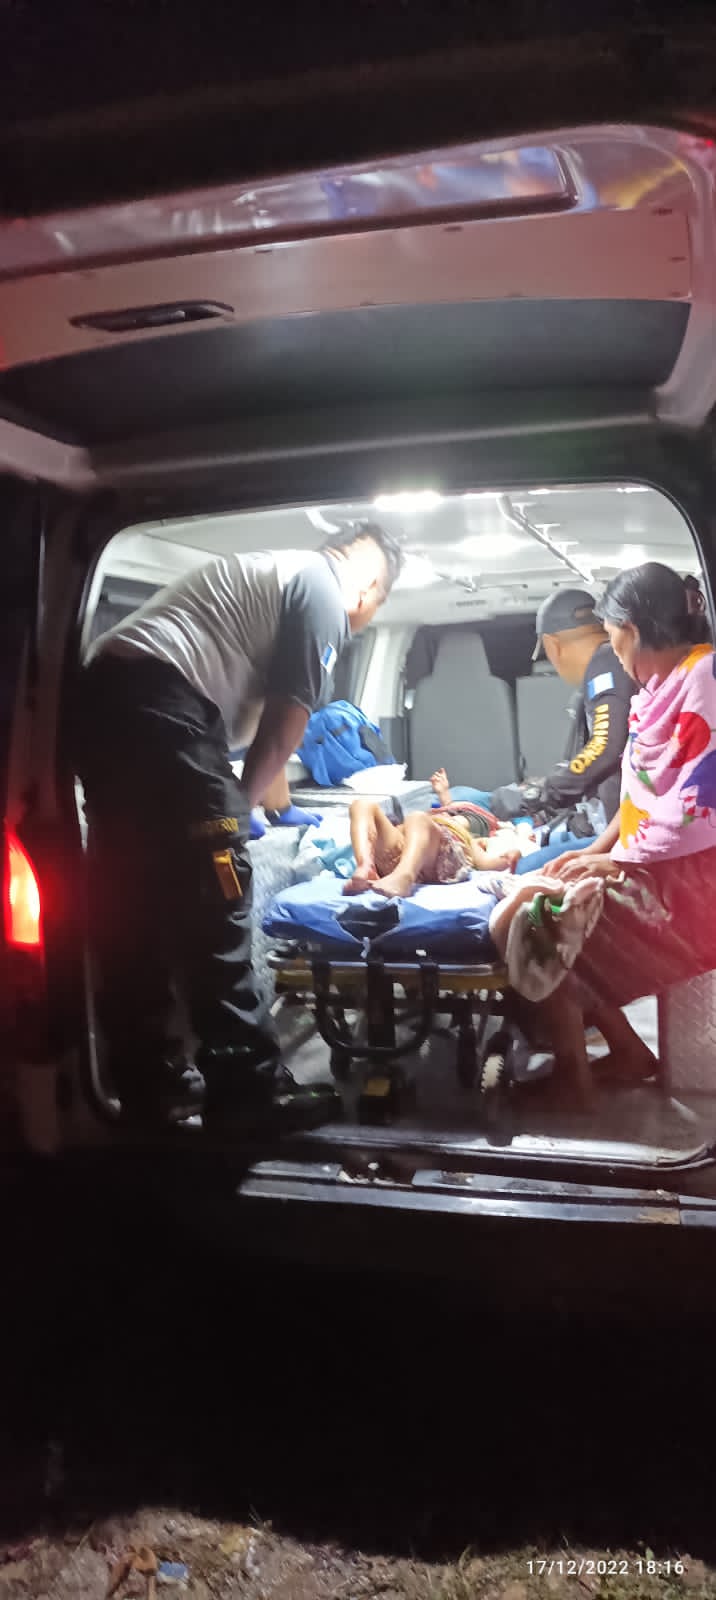 Bomberos Voluntarios de Poptún, Petén, trasladaron de emergencia a dos niños, de 2 y 4 años, a un centro asistencial tras haber sido baleados por su padre, que al final se suicidó. Foto Bomberos Voluntarios.